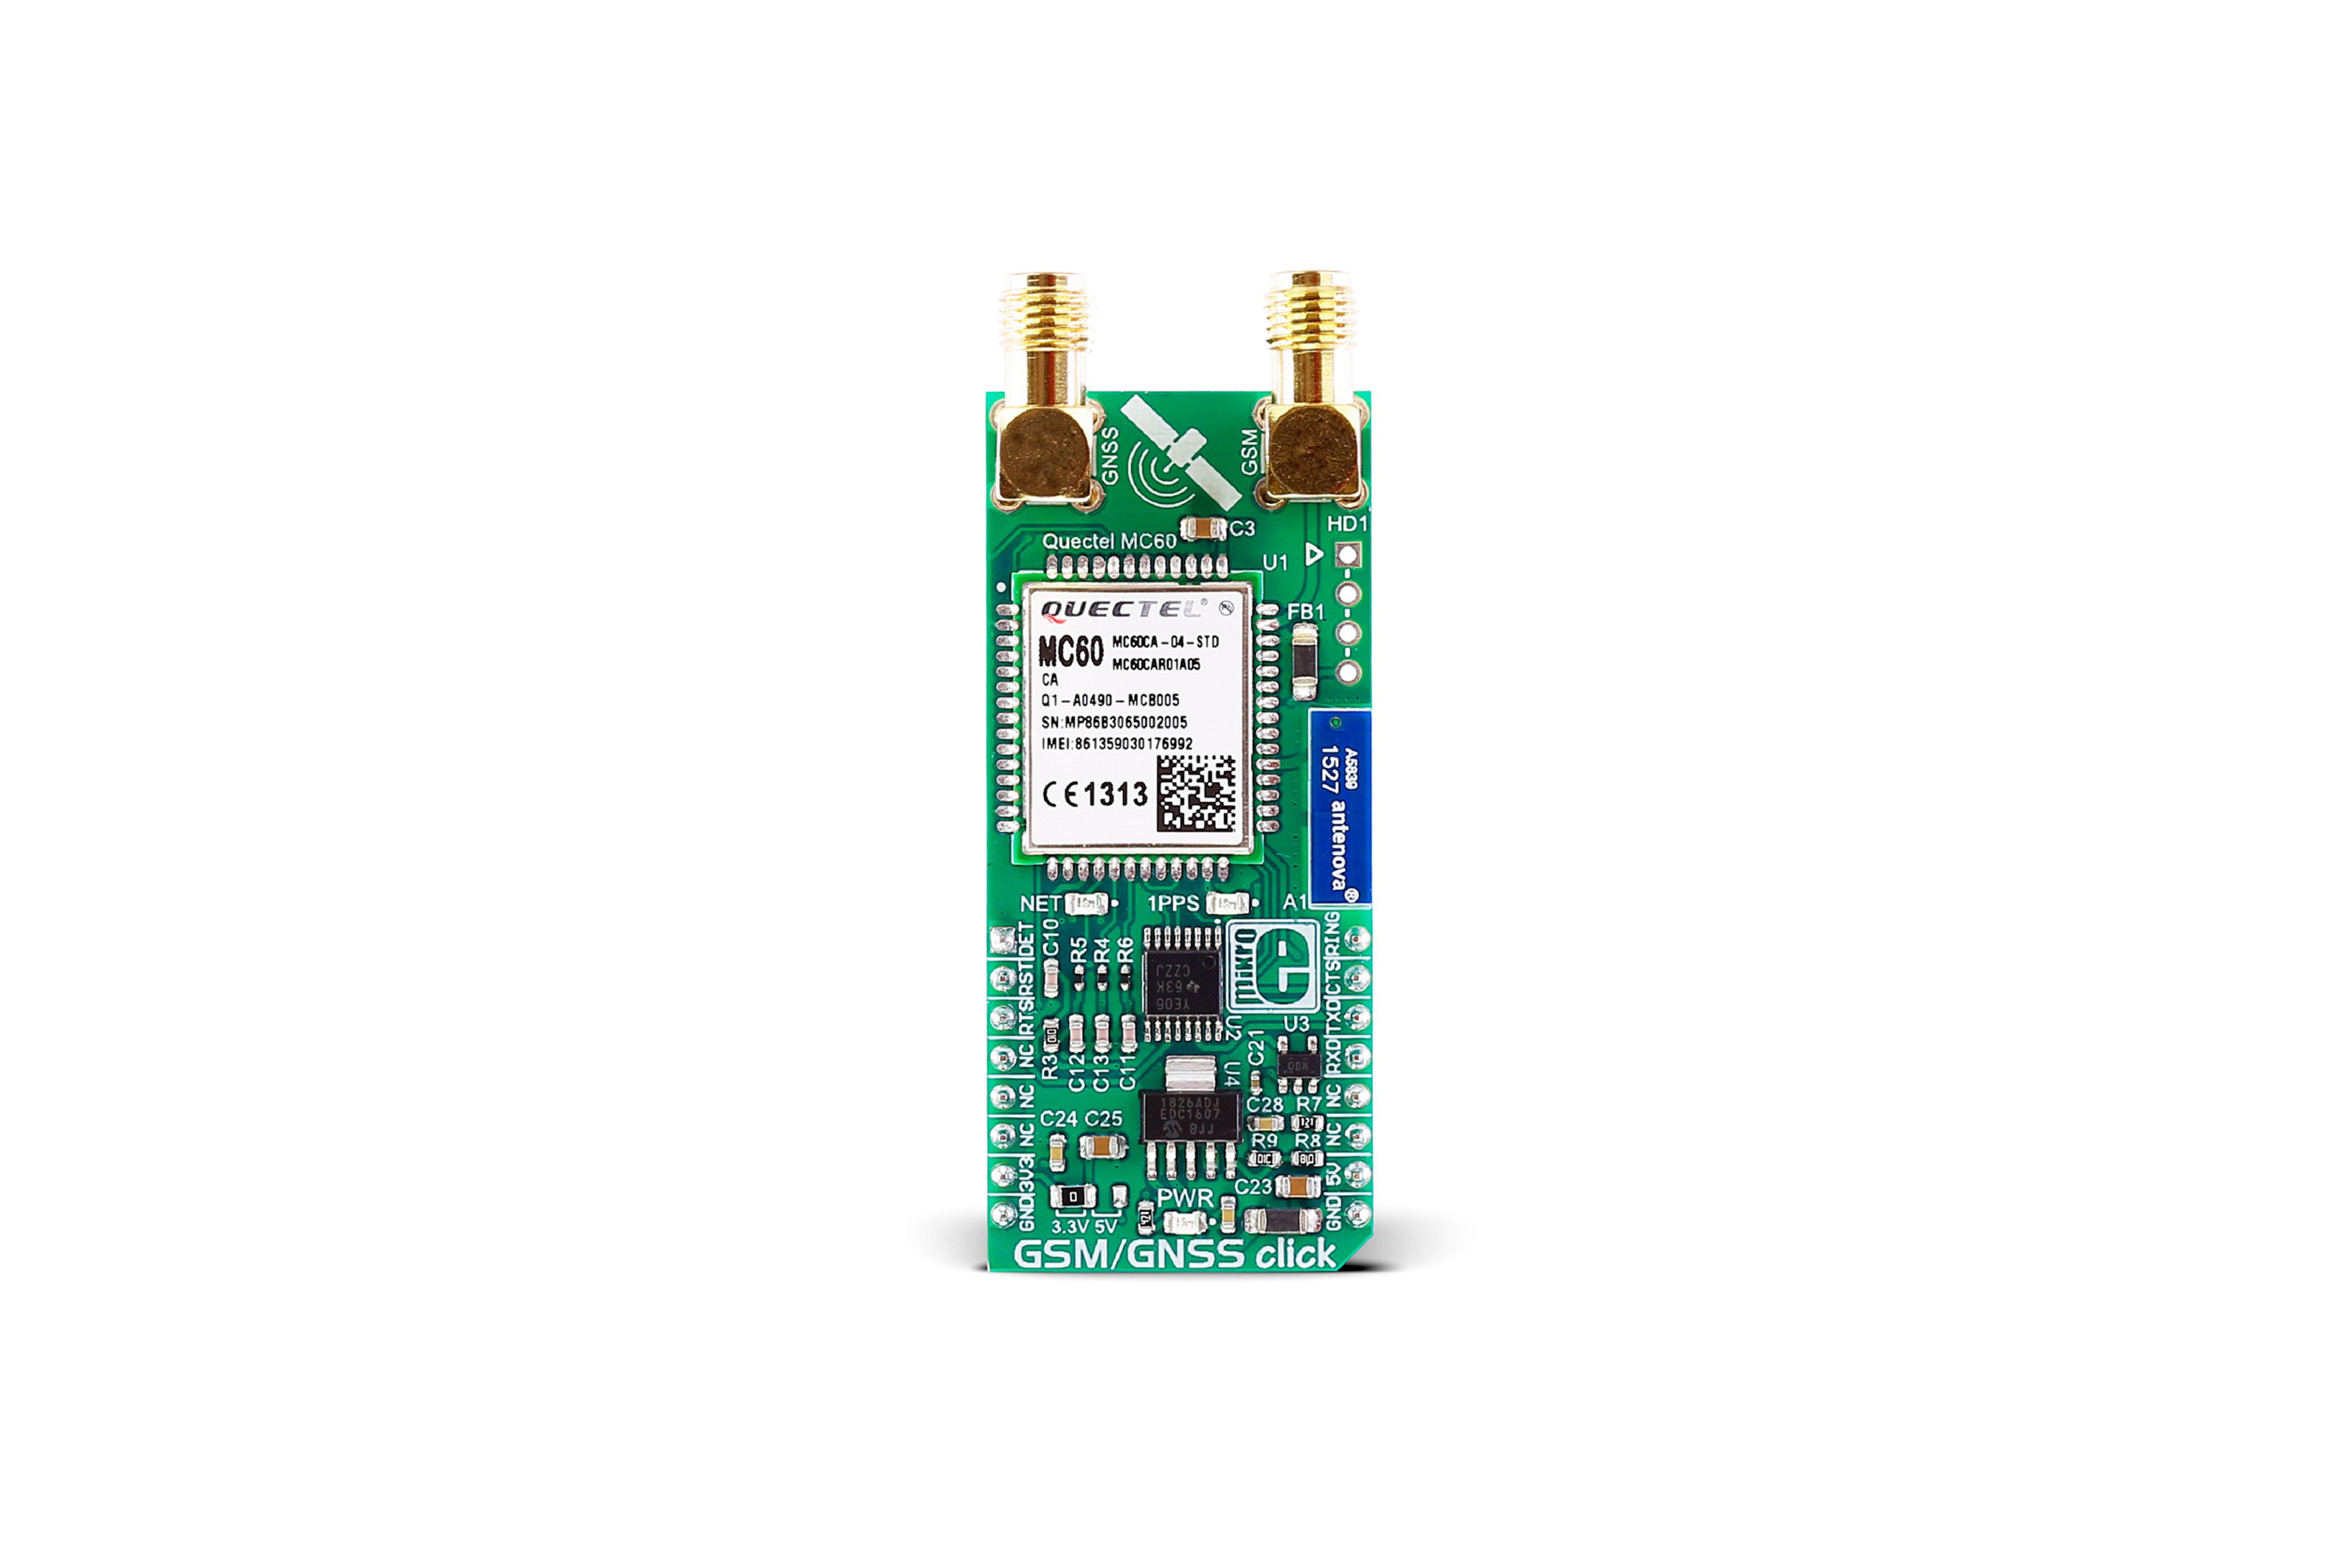 MIKROE GSM/GNSS CLICK BOARD, MIKROE-2439